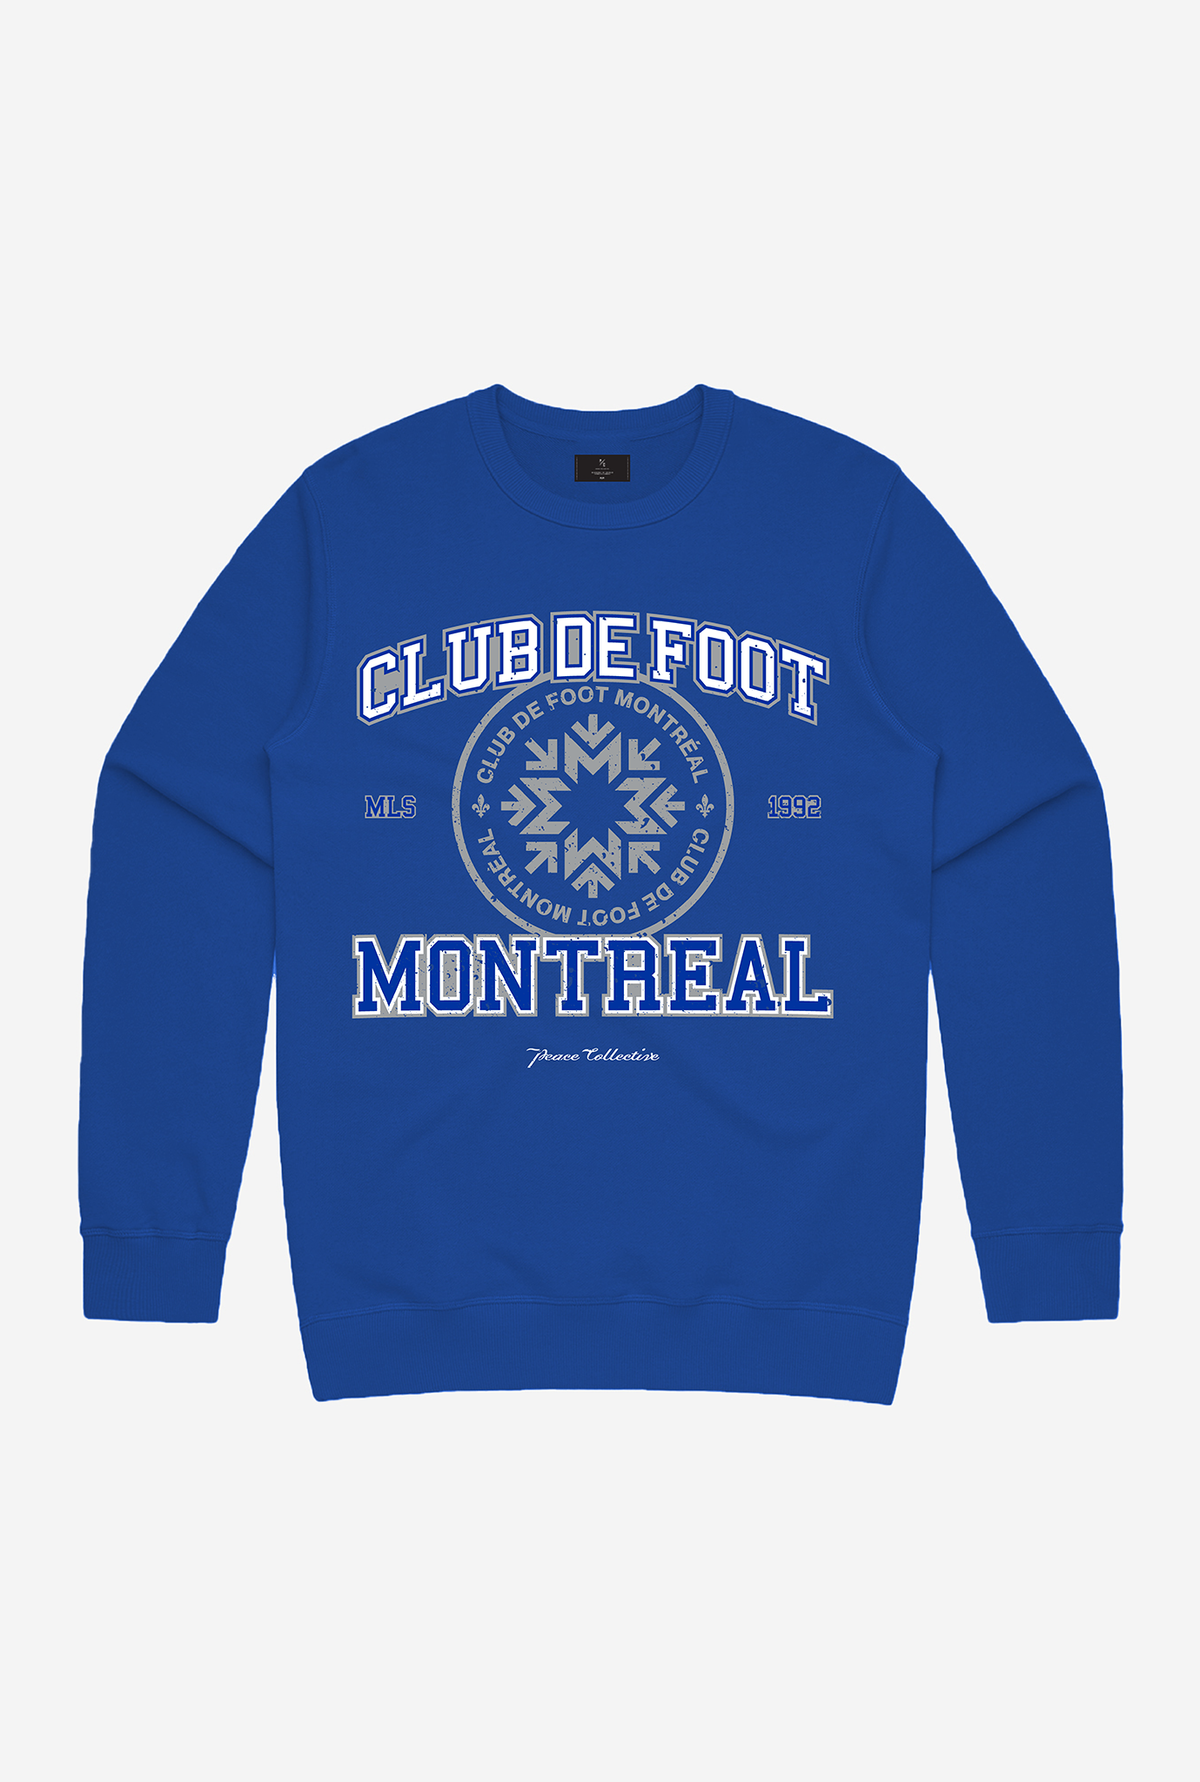 Montreal FC Vintage Washed Crewneck - Royal